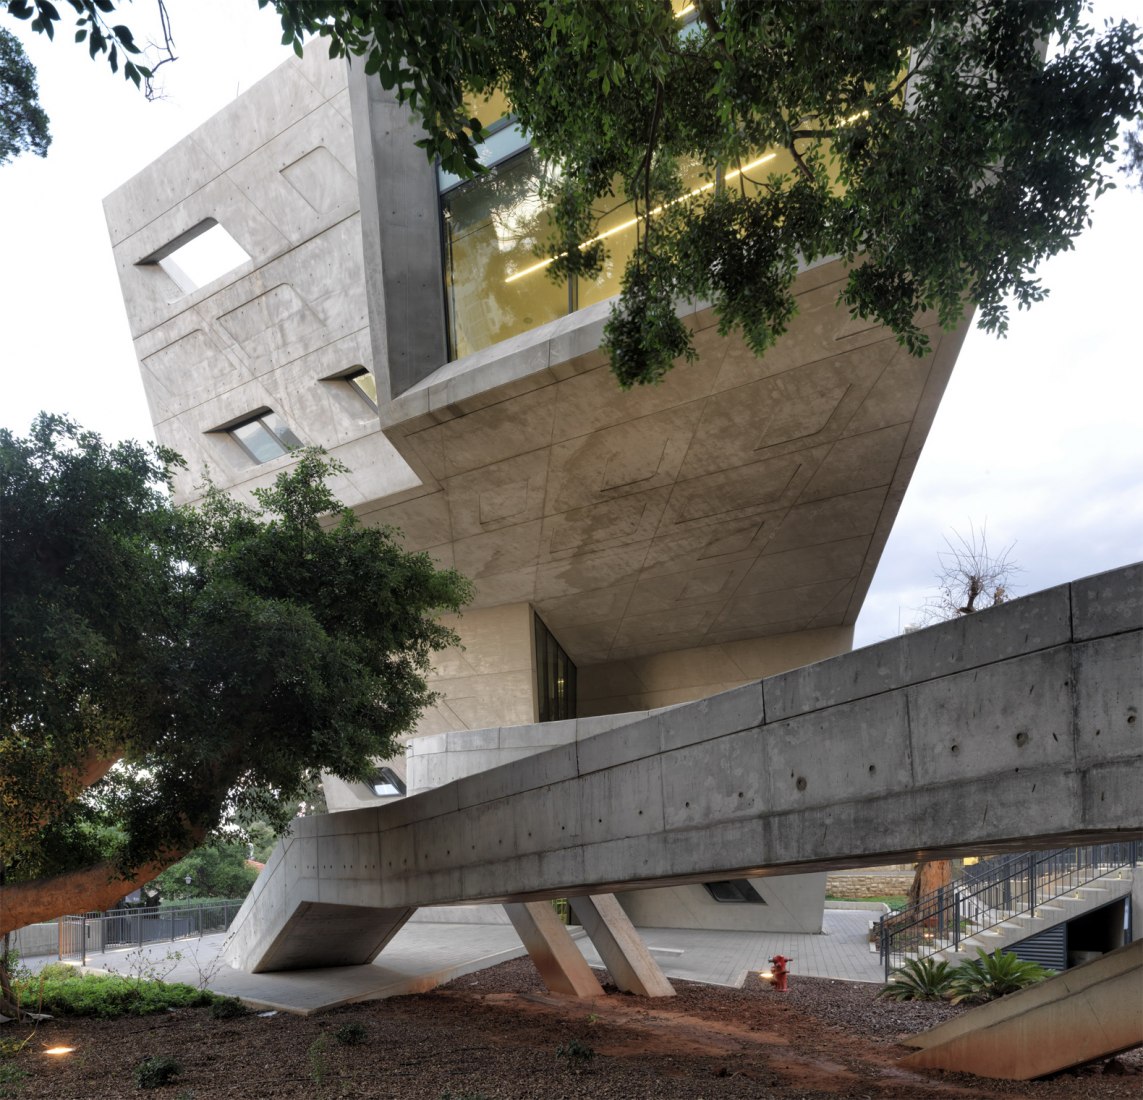 Instituto Issam Fares de Relaciones Internacionales y Políticas Públicas por Zaha Hadid Architects. Vista exterior de detalle. Fotografía © Aga Khan Trust for Culture / Cemal Emden.